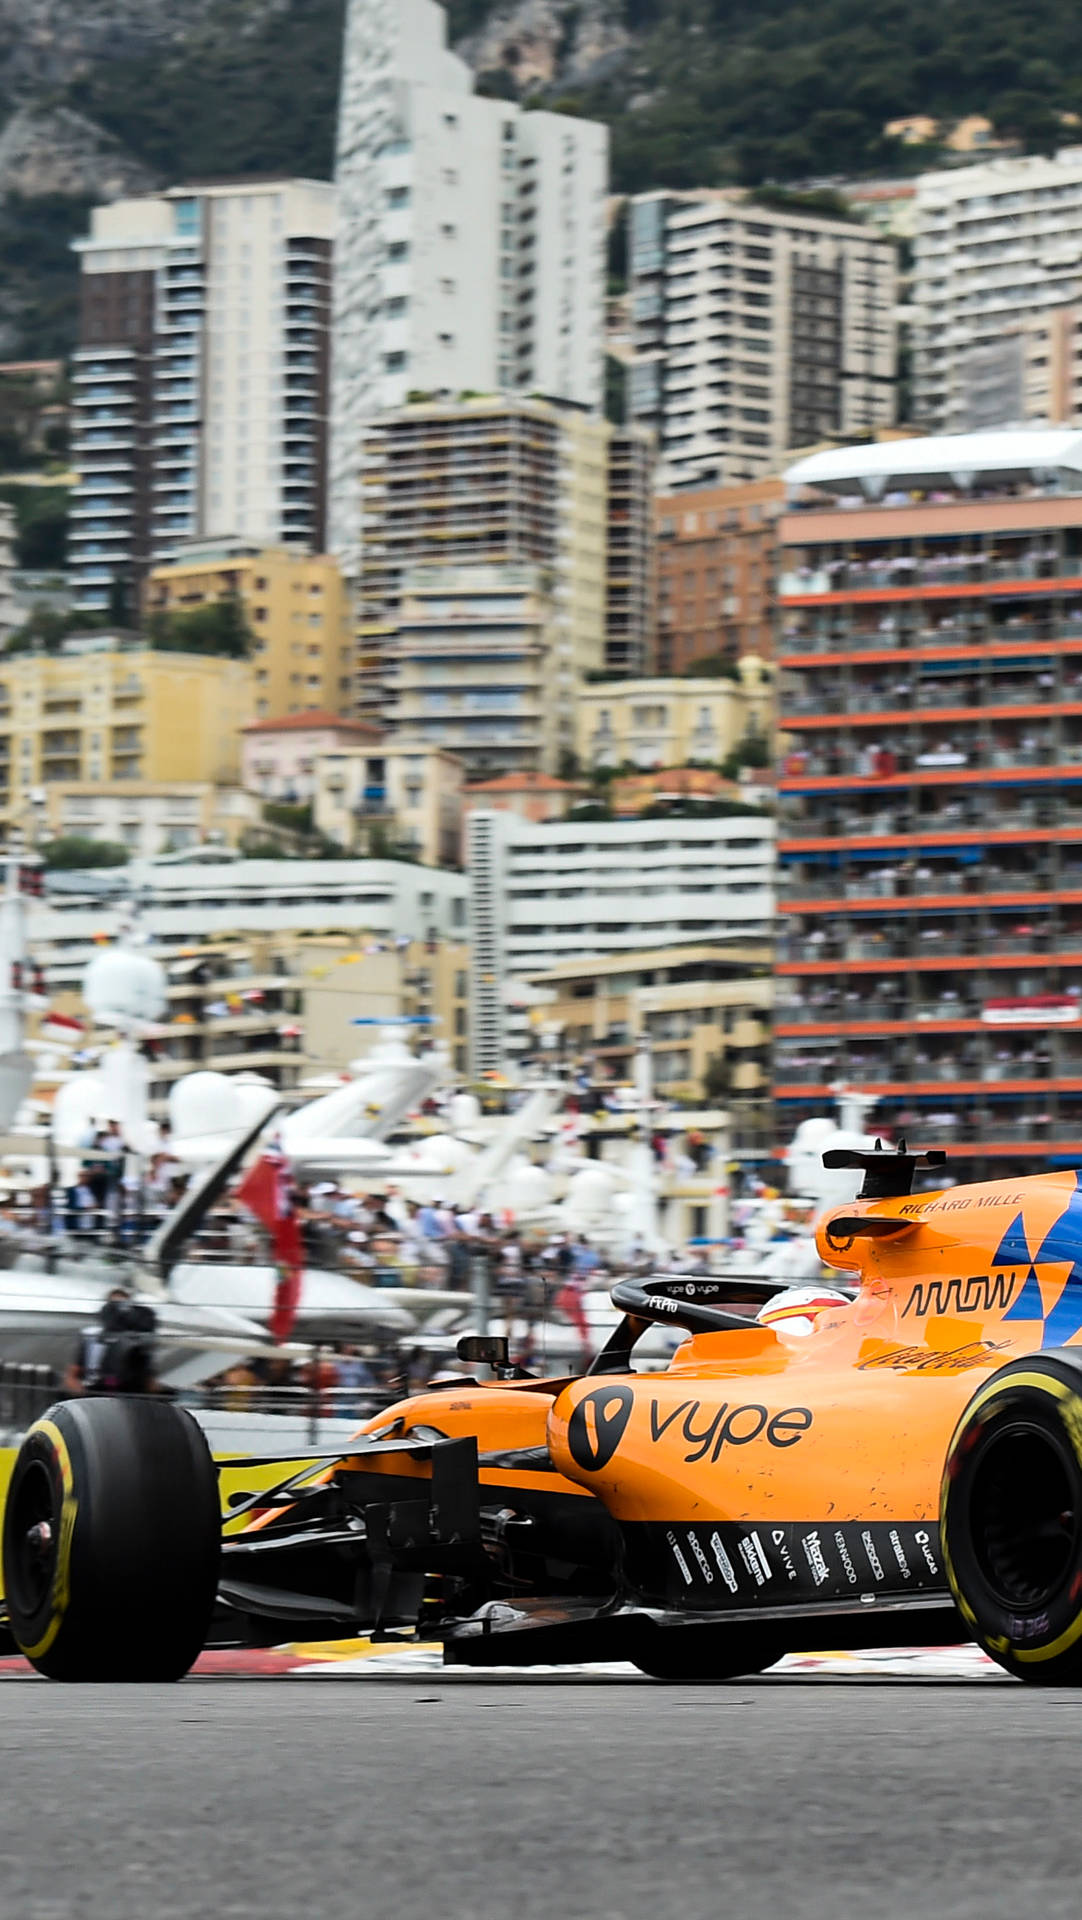 F1 Mclaren På Monaco Circuit Iphone Wallpaper